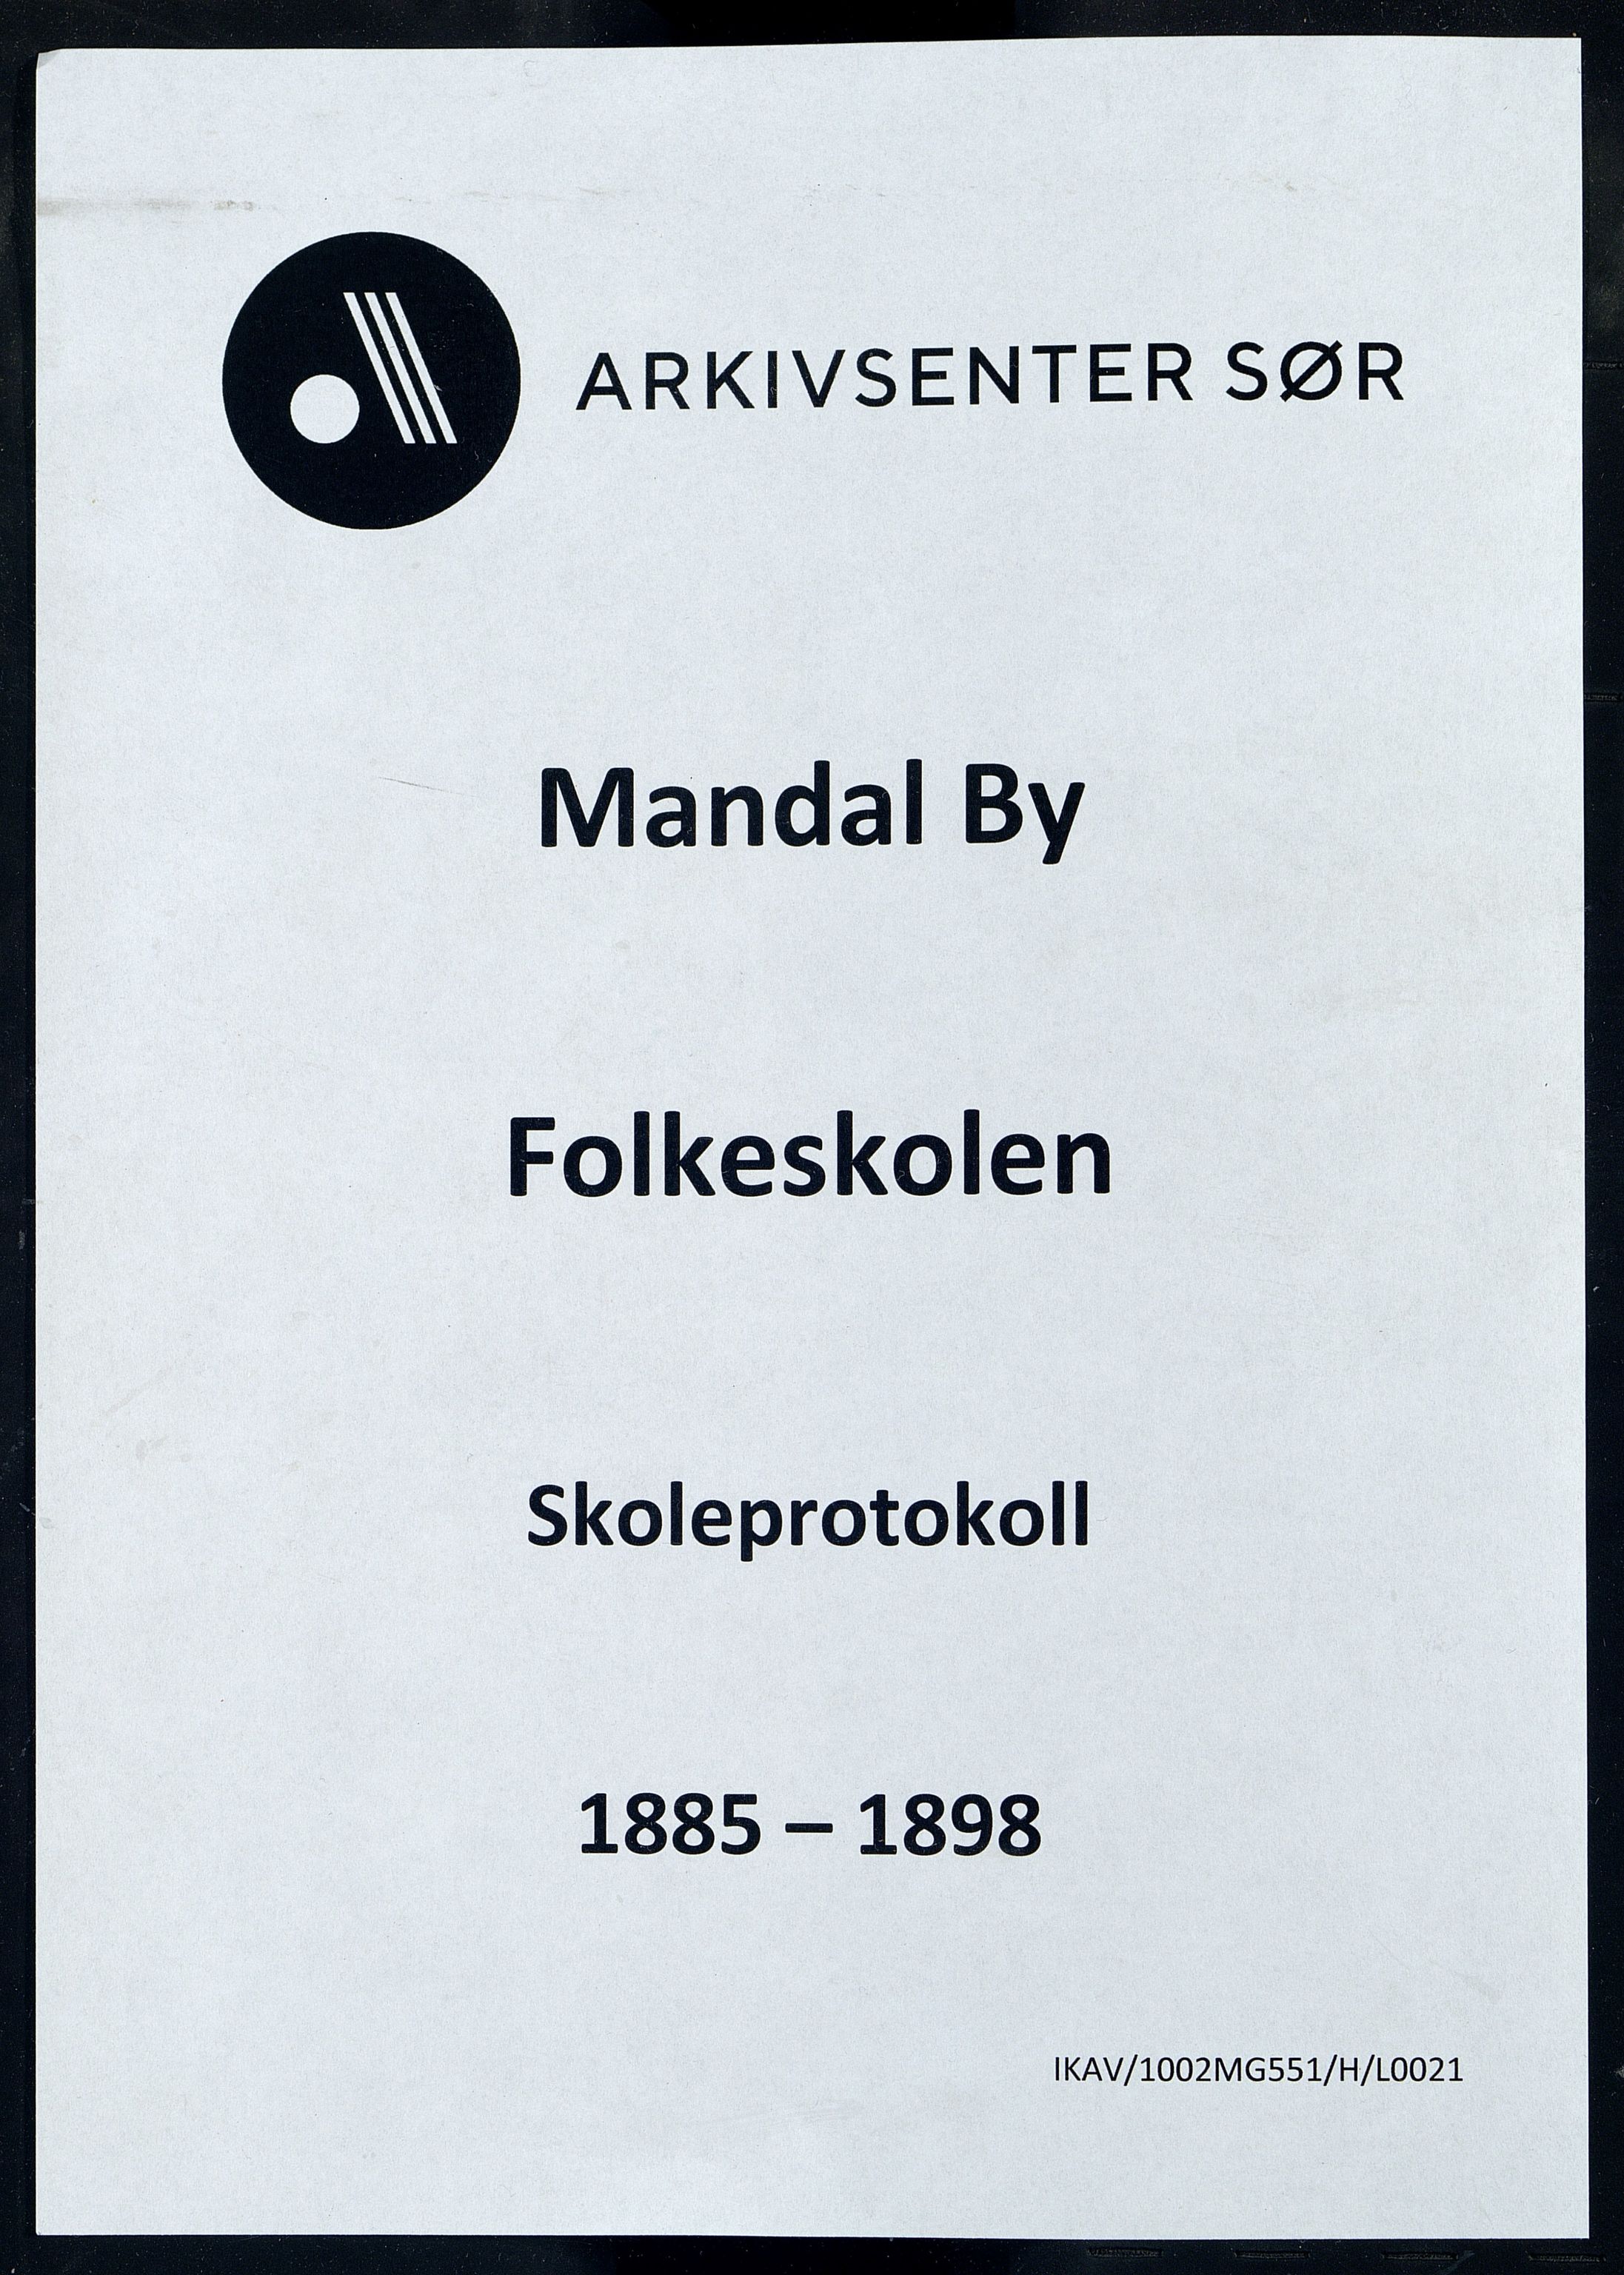 Mandal By - Mandal Allmueskole/Folkeskole/Skole, IKAV/1002MG551/H/L0021: Skoleprotokoll, 1885-1898